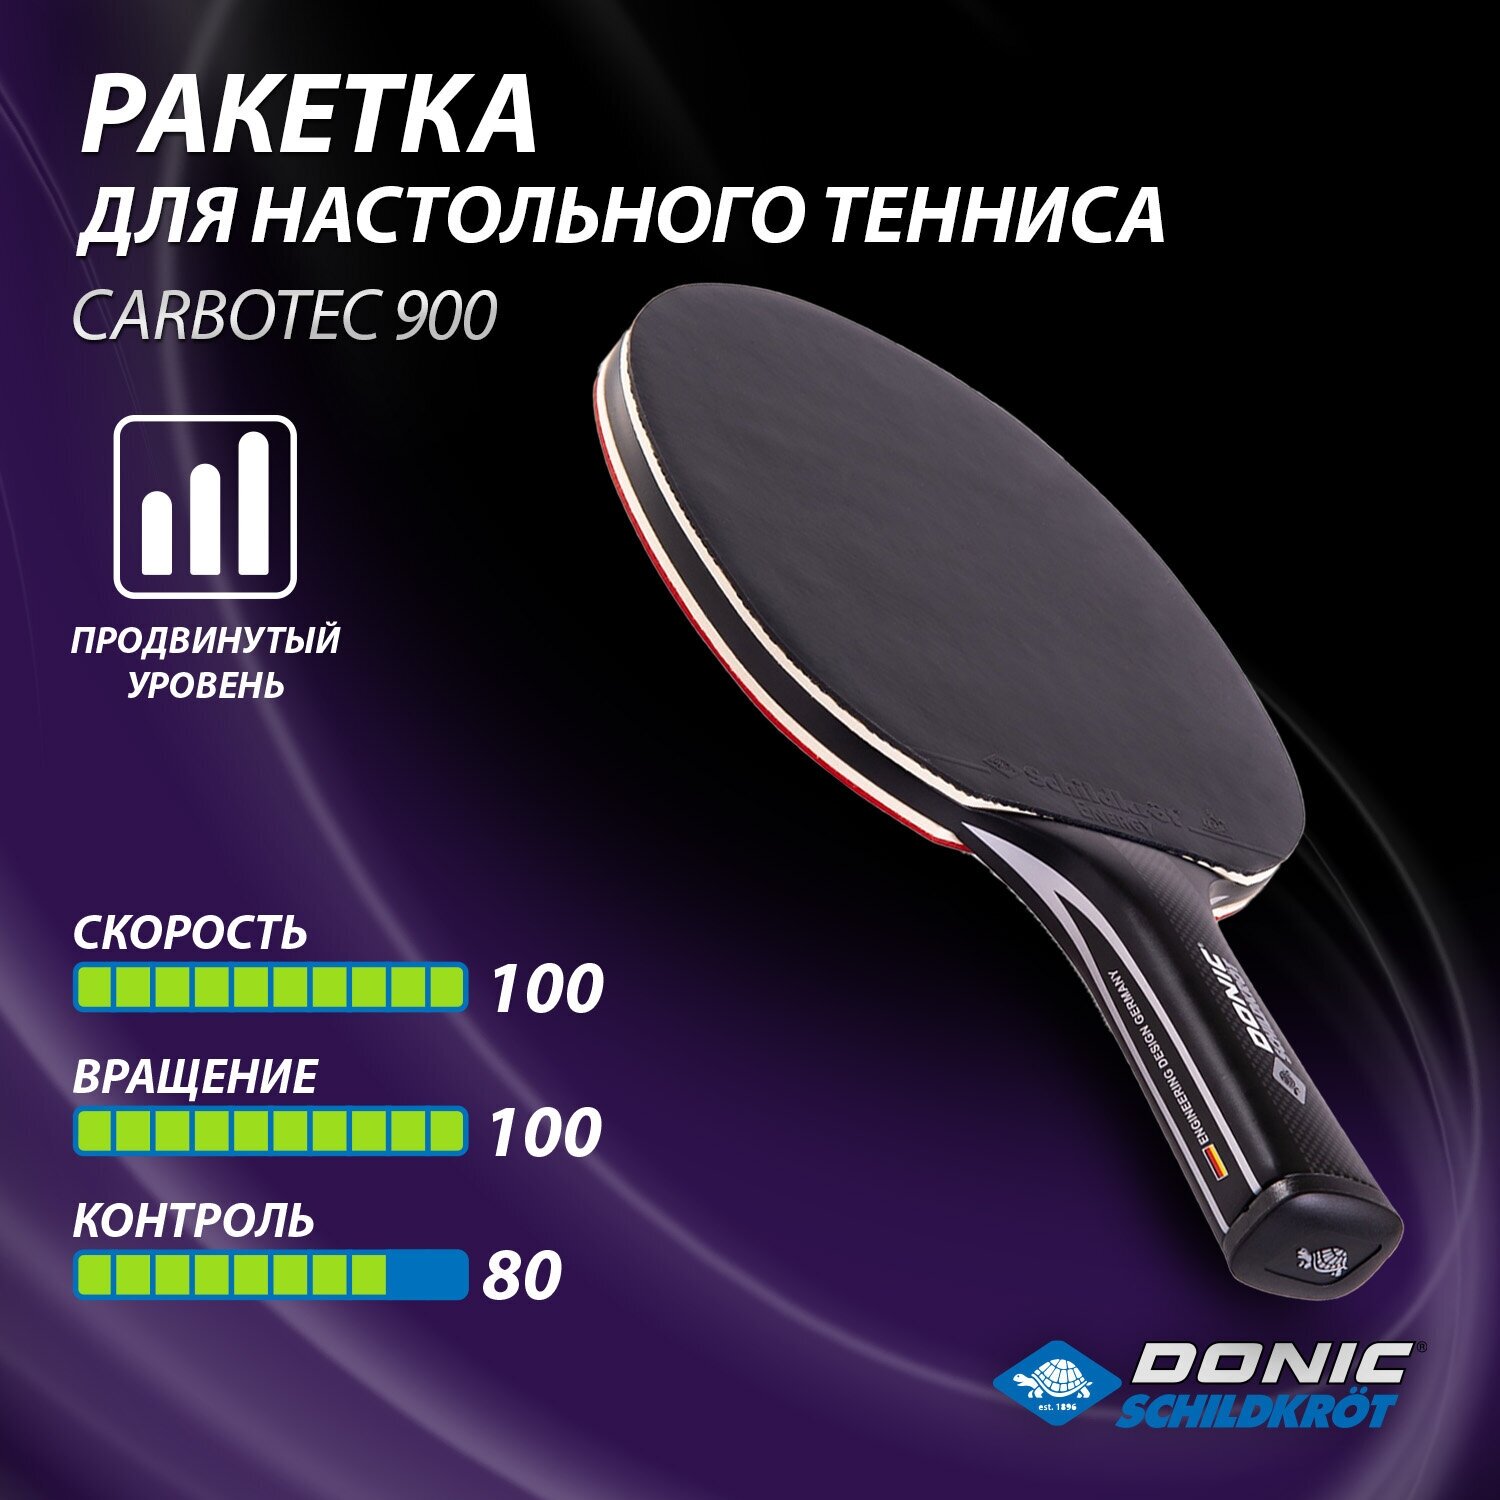 Ракетка для настольного тенниса Donic-Schildkröt Carbotec 900, carbon